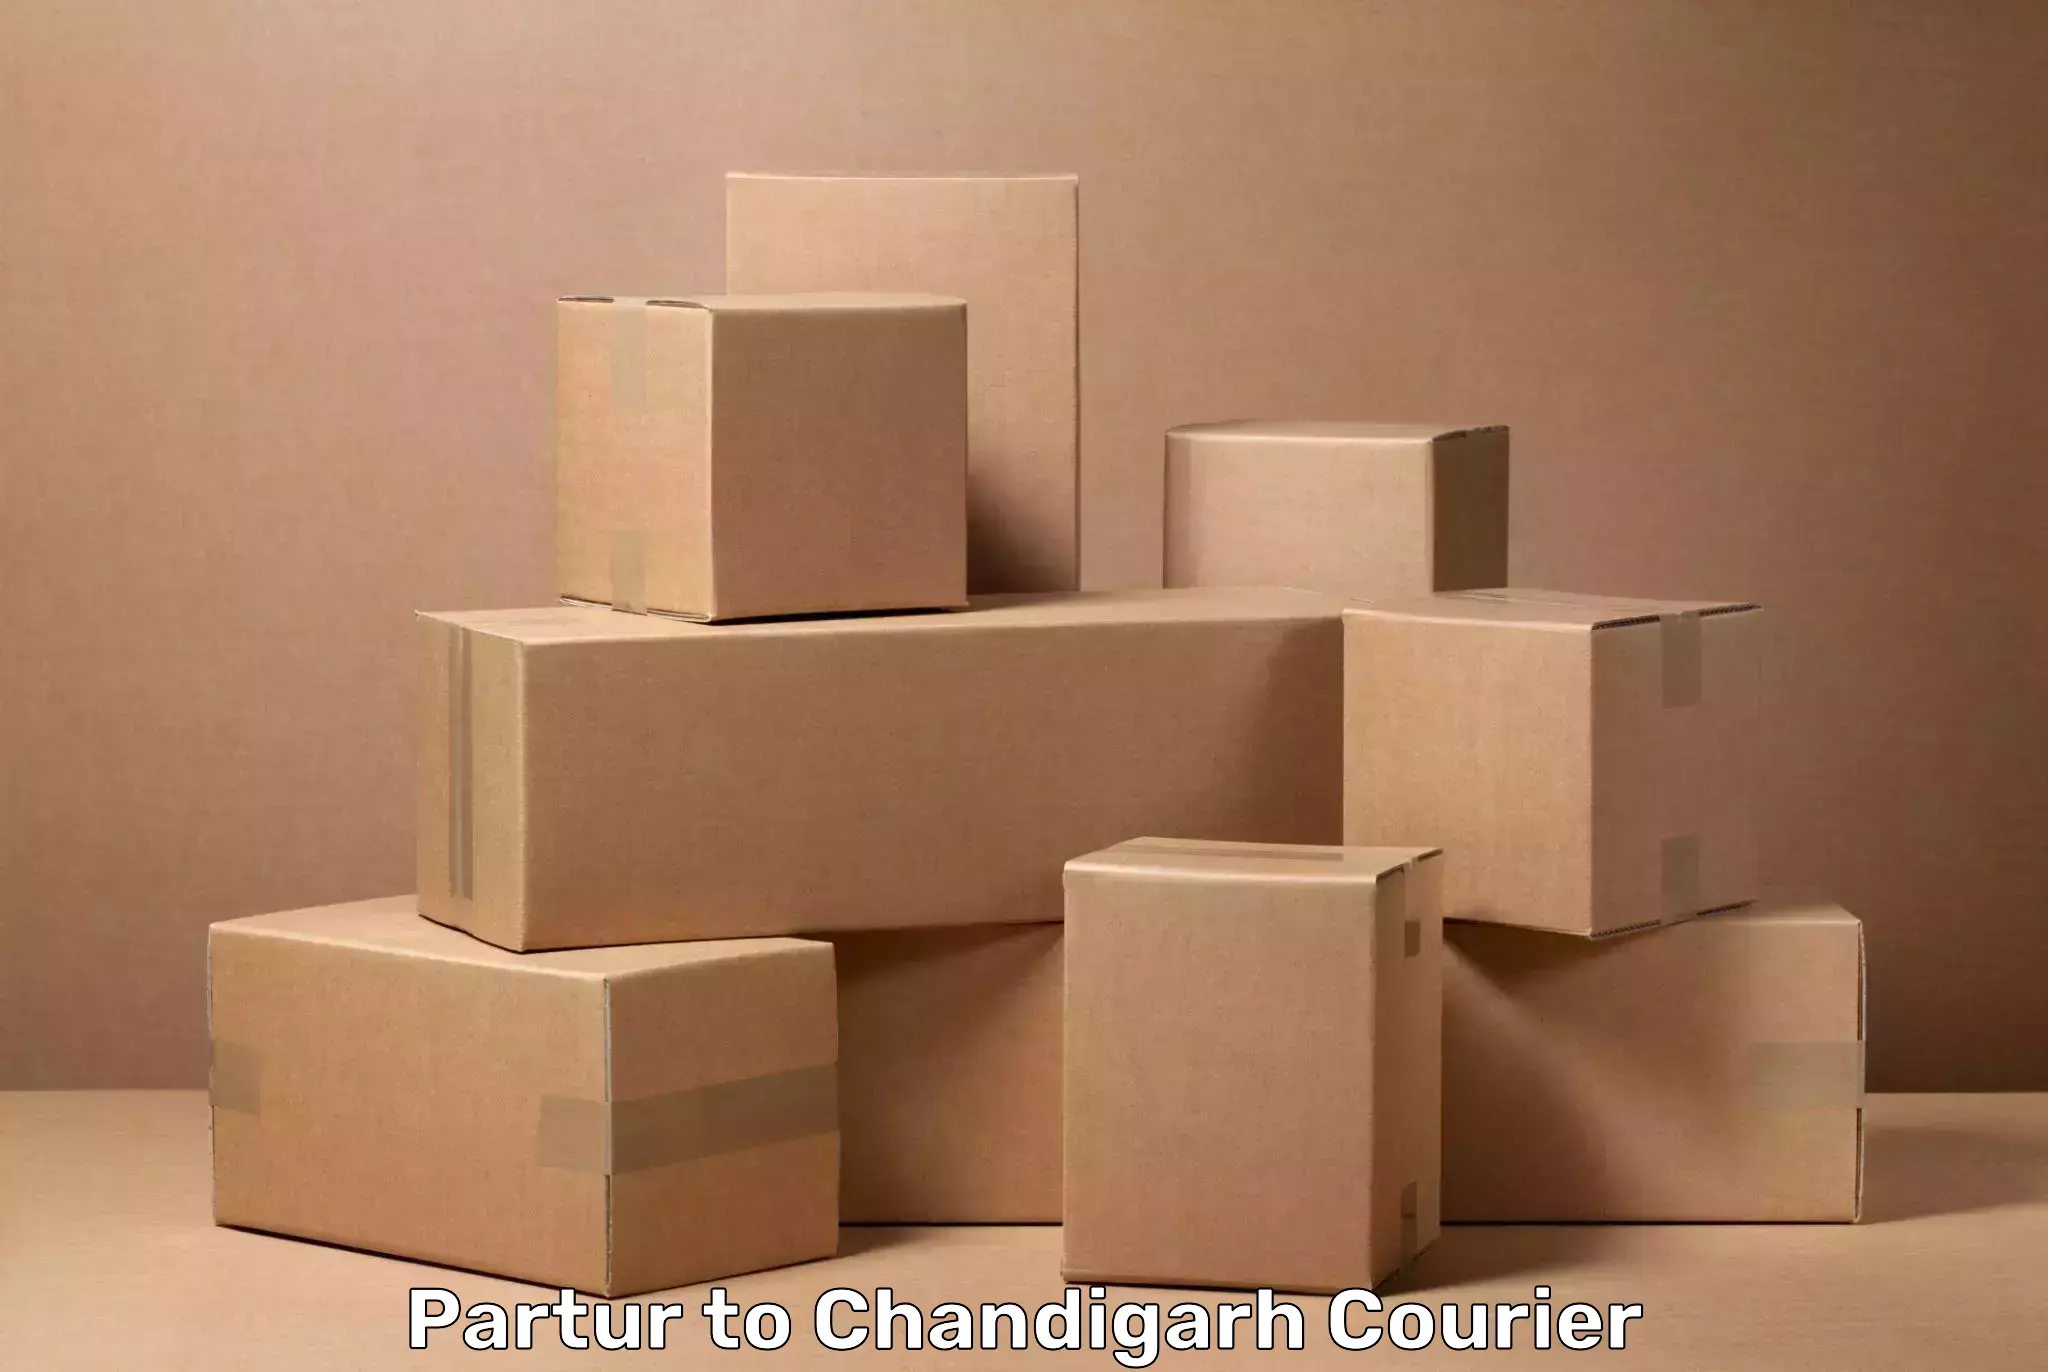 Baggage transport scheduler Partur to Chandigarh